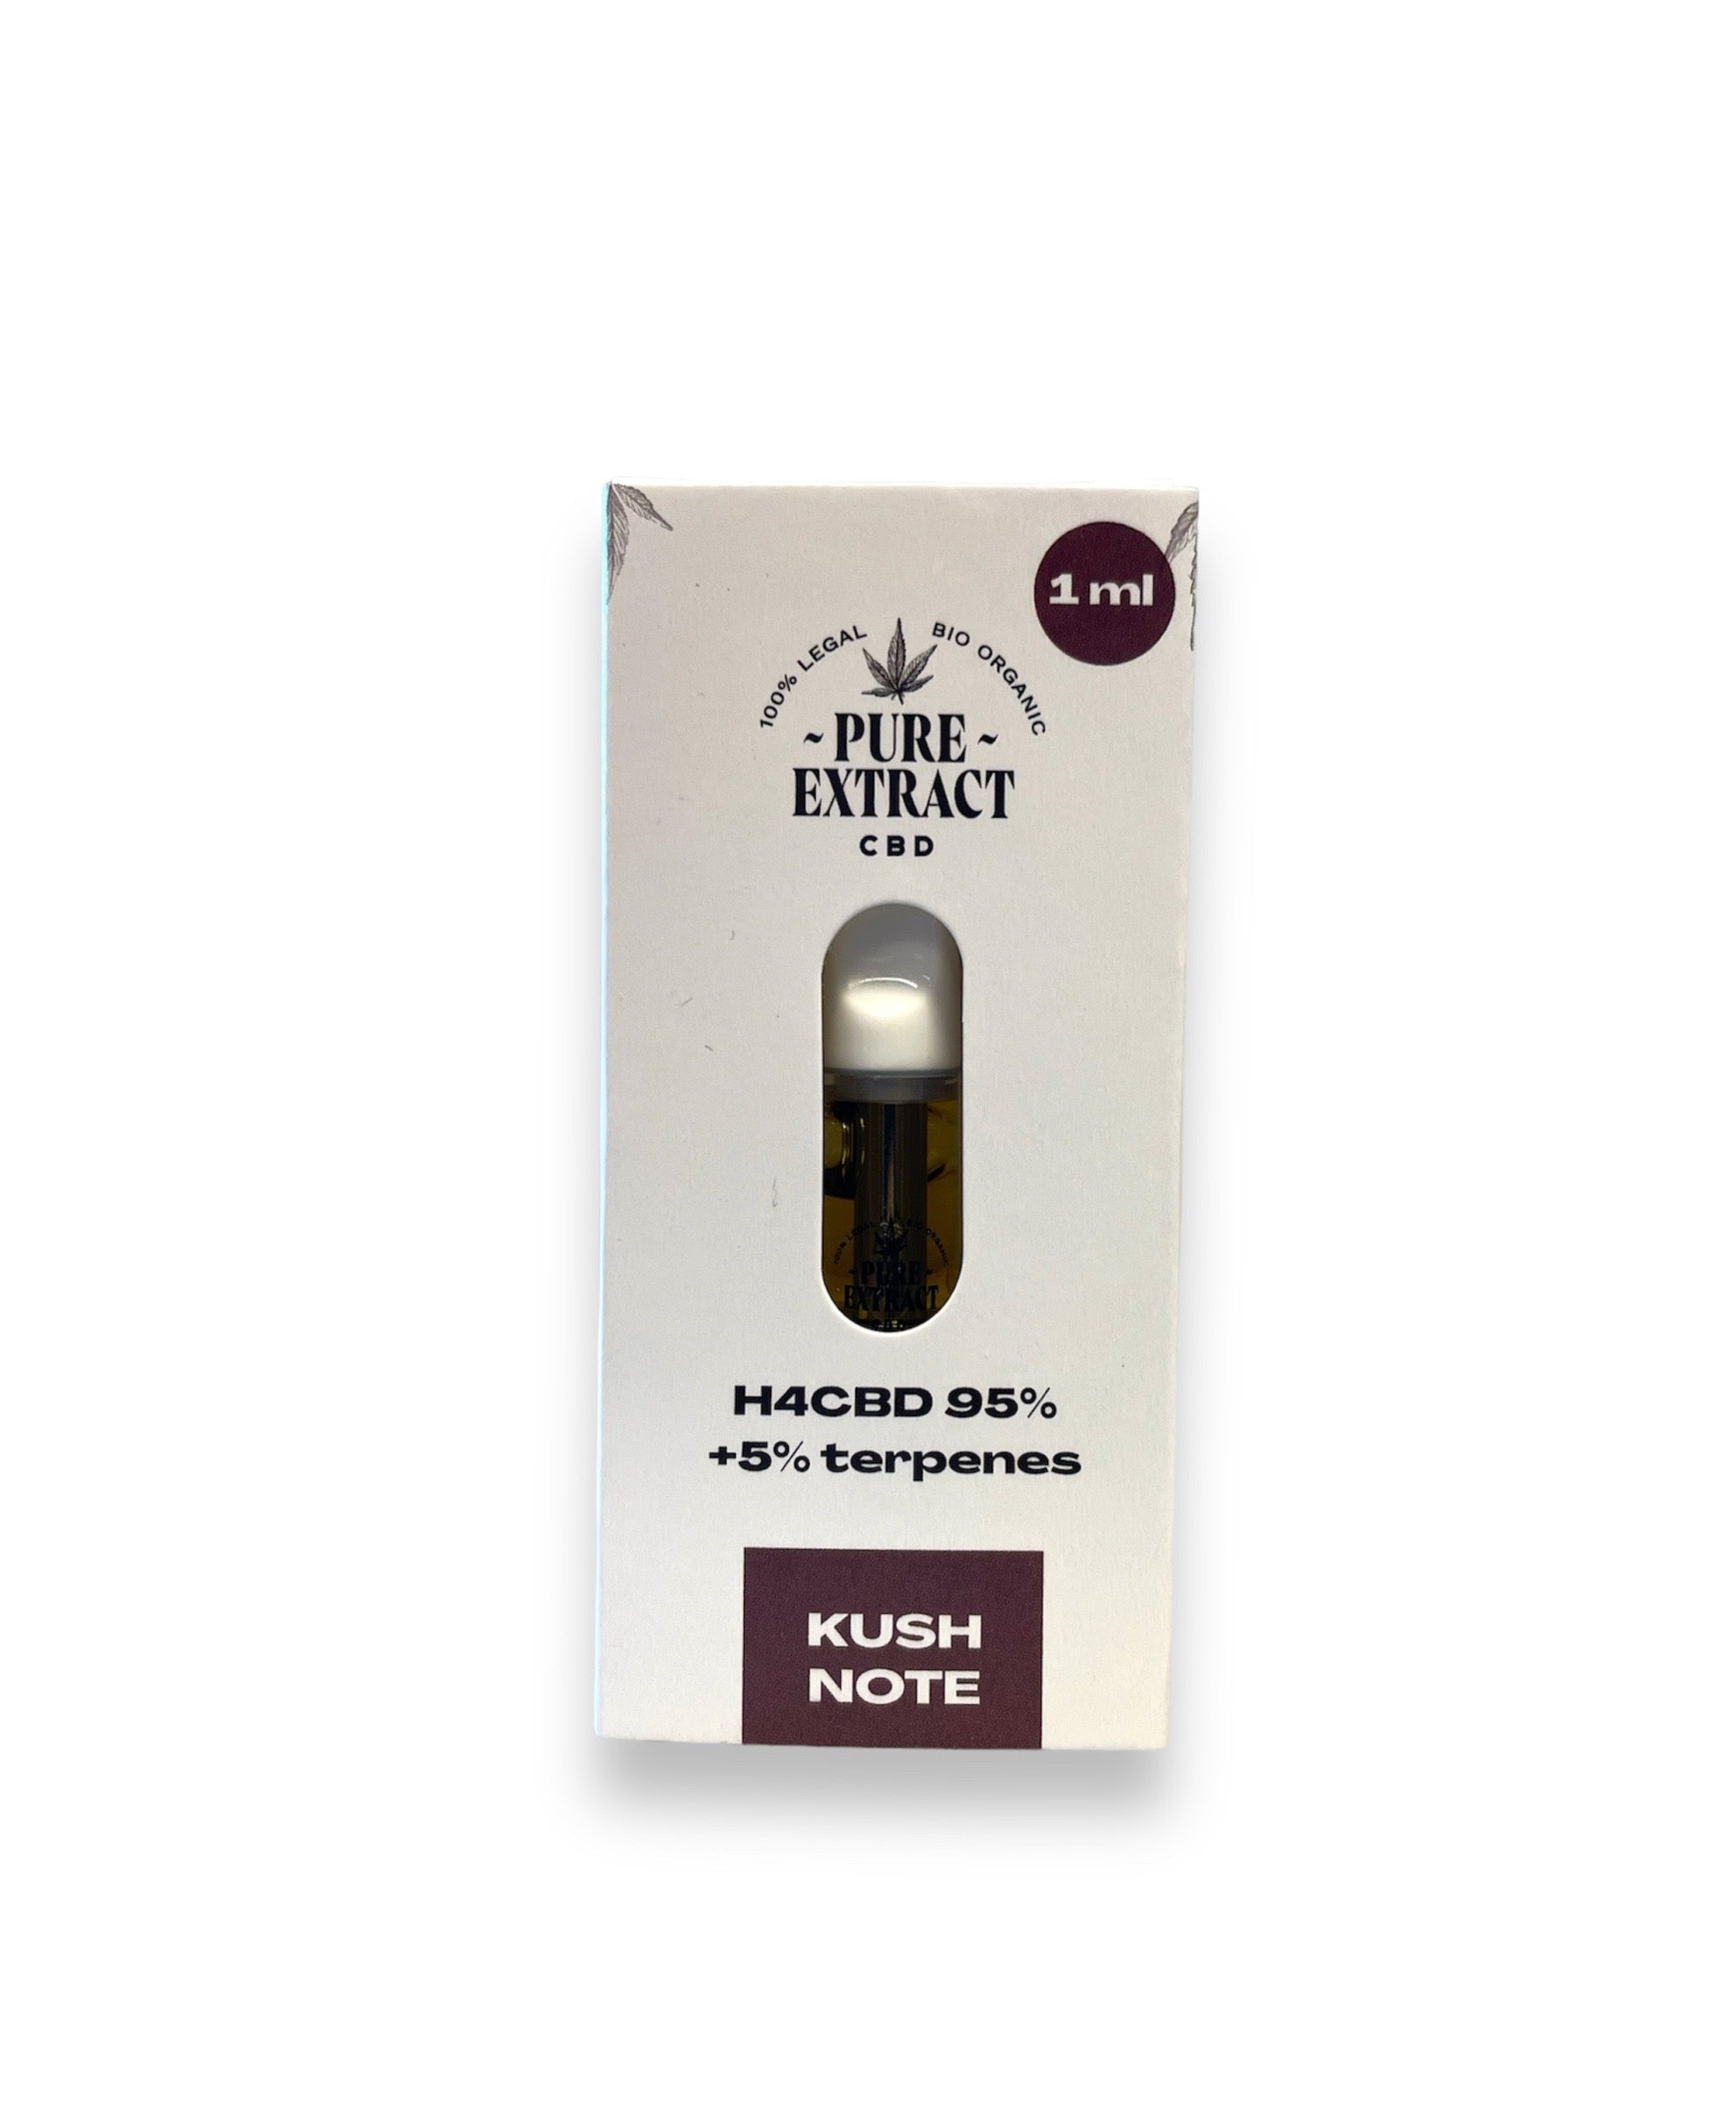 Pure Extract CBD Cartridge (Dab Pen) by H4CBD - Kush Note - 95% H4CBD - 1ML - 600 puffs